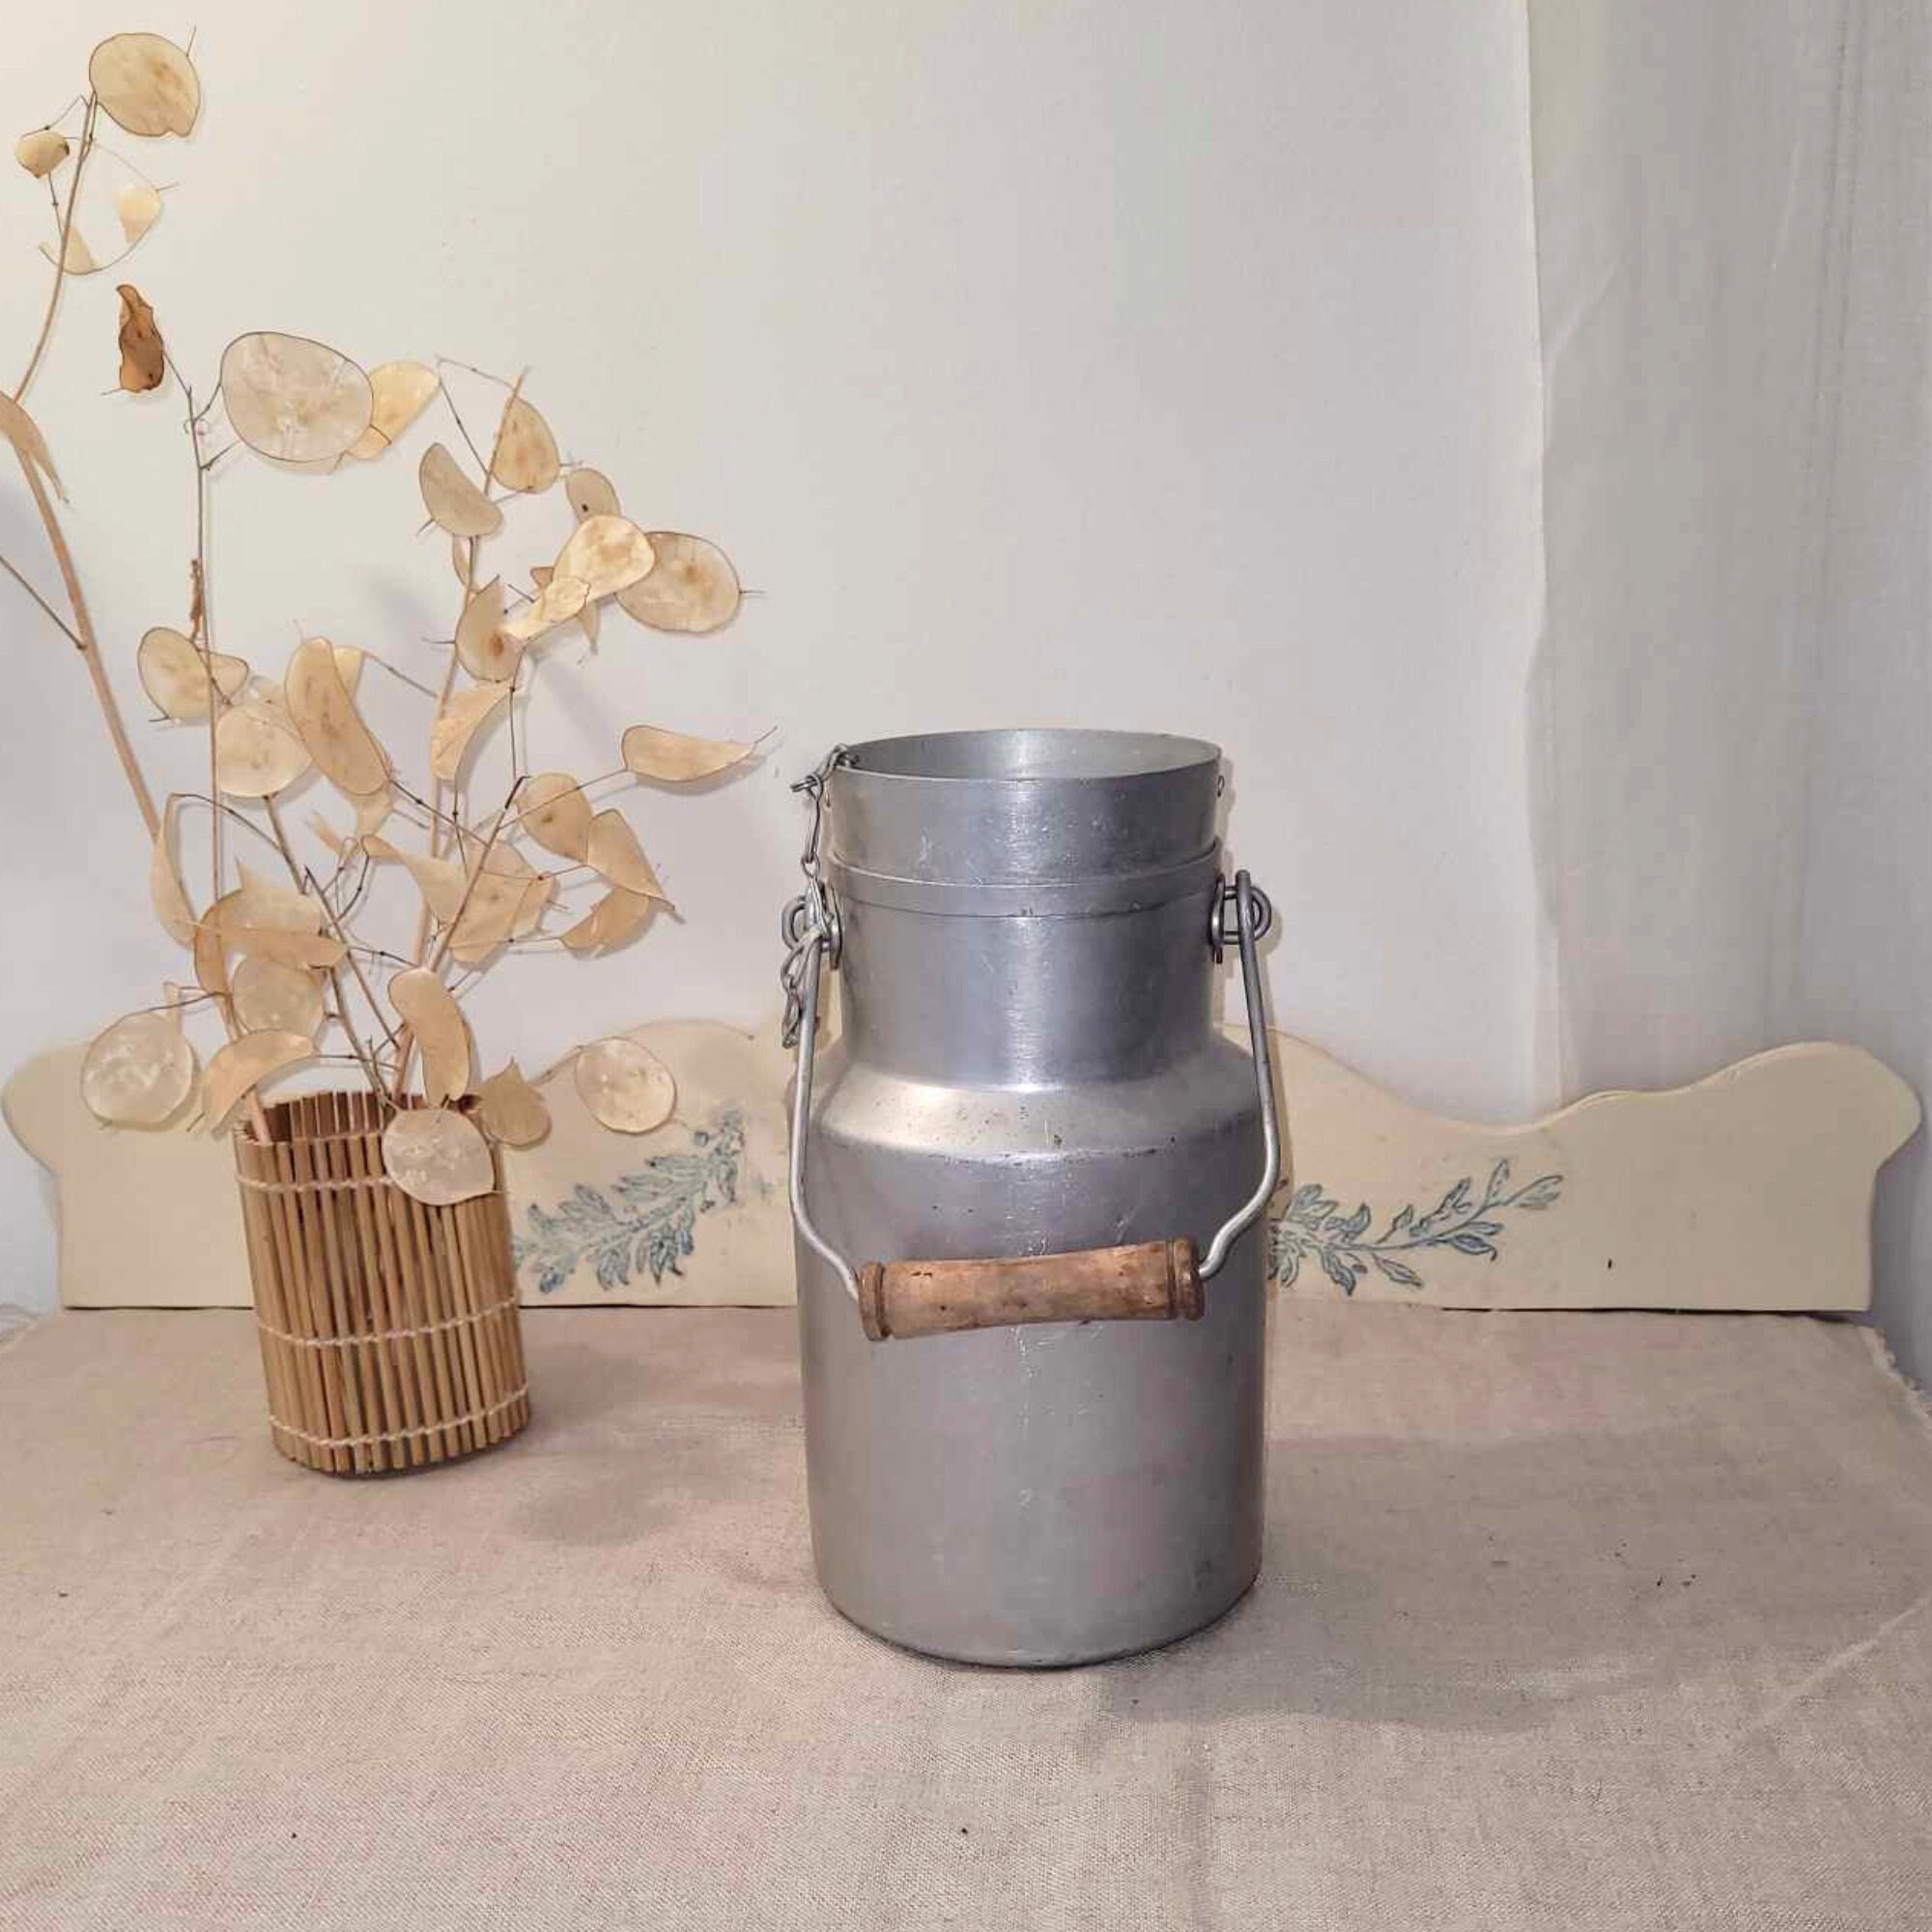 Petit pot de lait vintage avec poignée en aluminium, ferme rustique vintage  Français décor de chalet de campagne, seau à lait vintage pour la cuisine  de ferme -  France